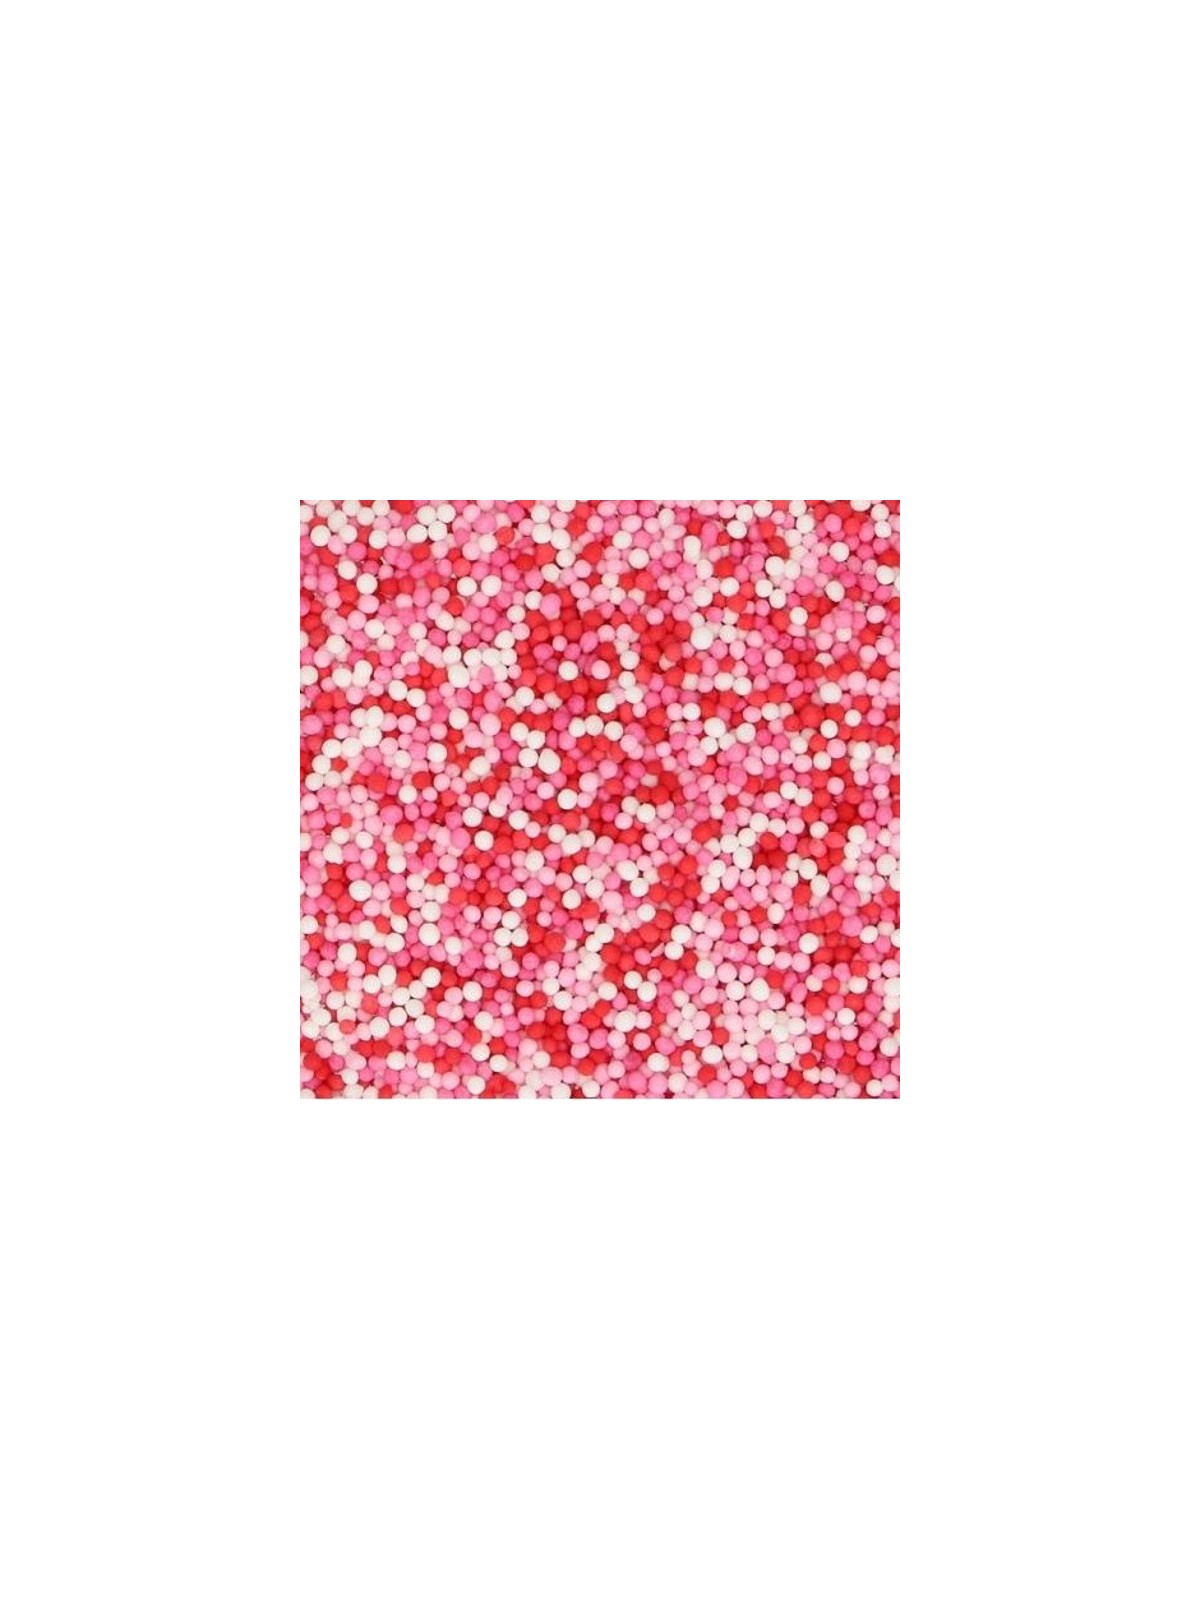 Cukrové perličky - máček červený / růžový / bílý - 50g